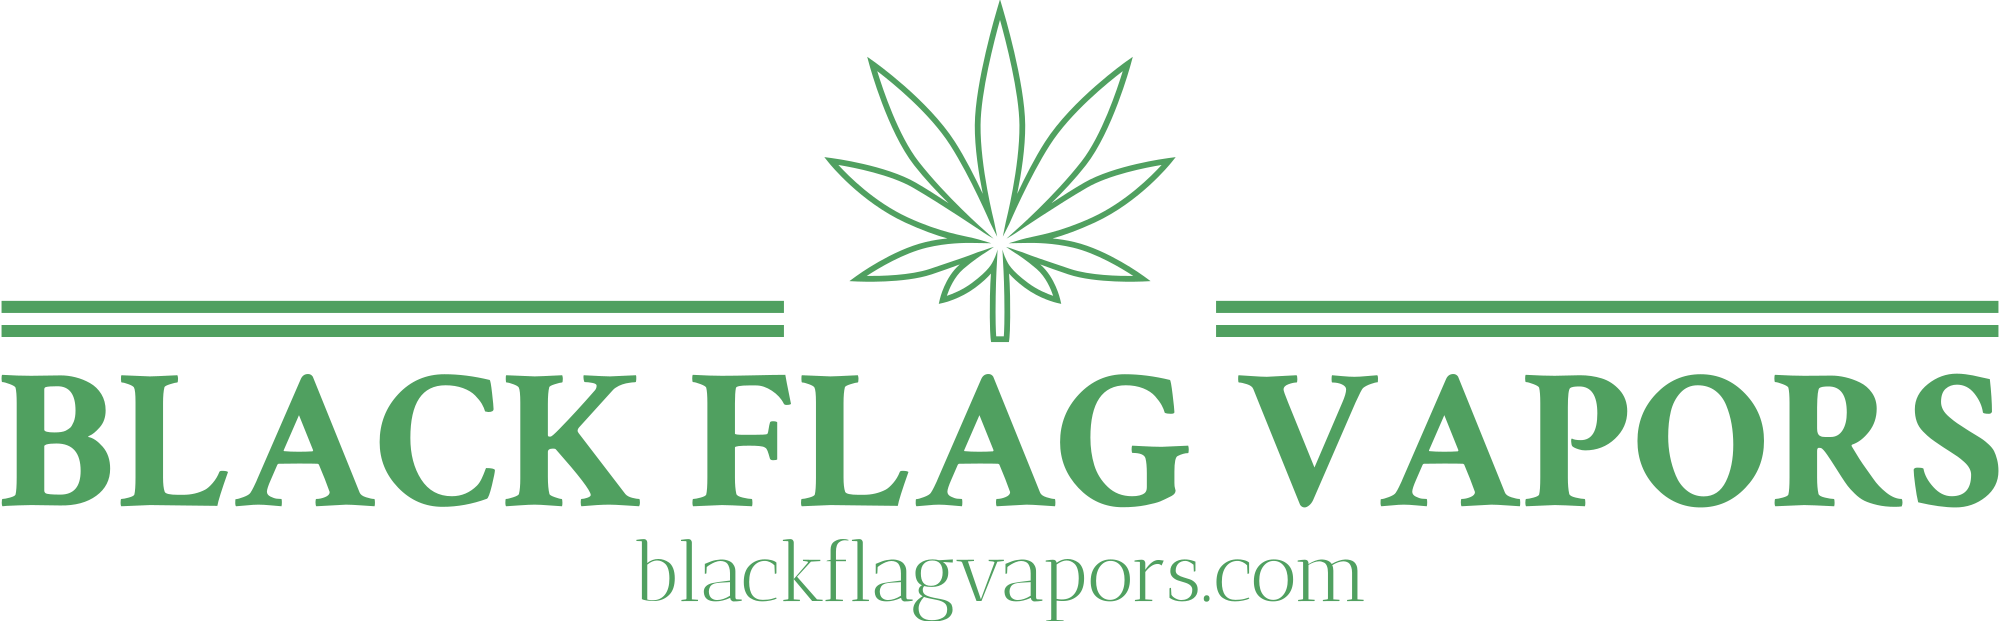 Black Flag Vapors